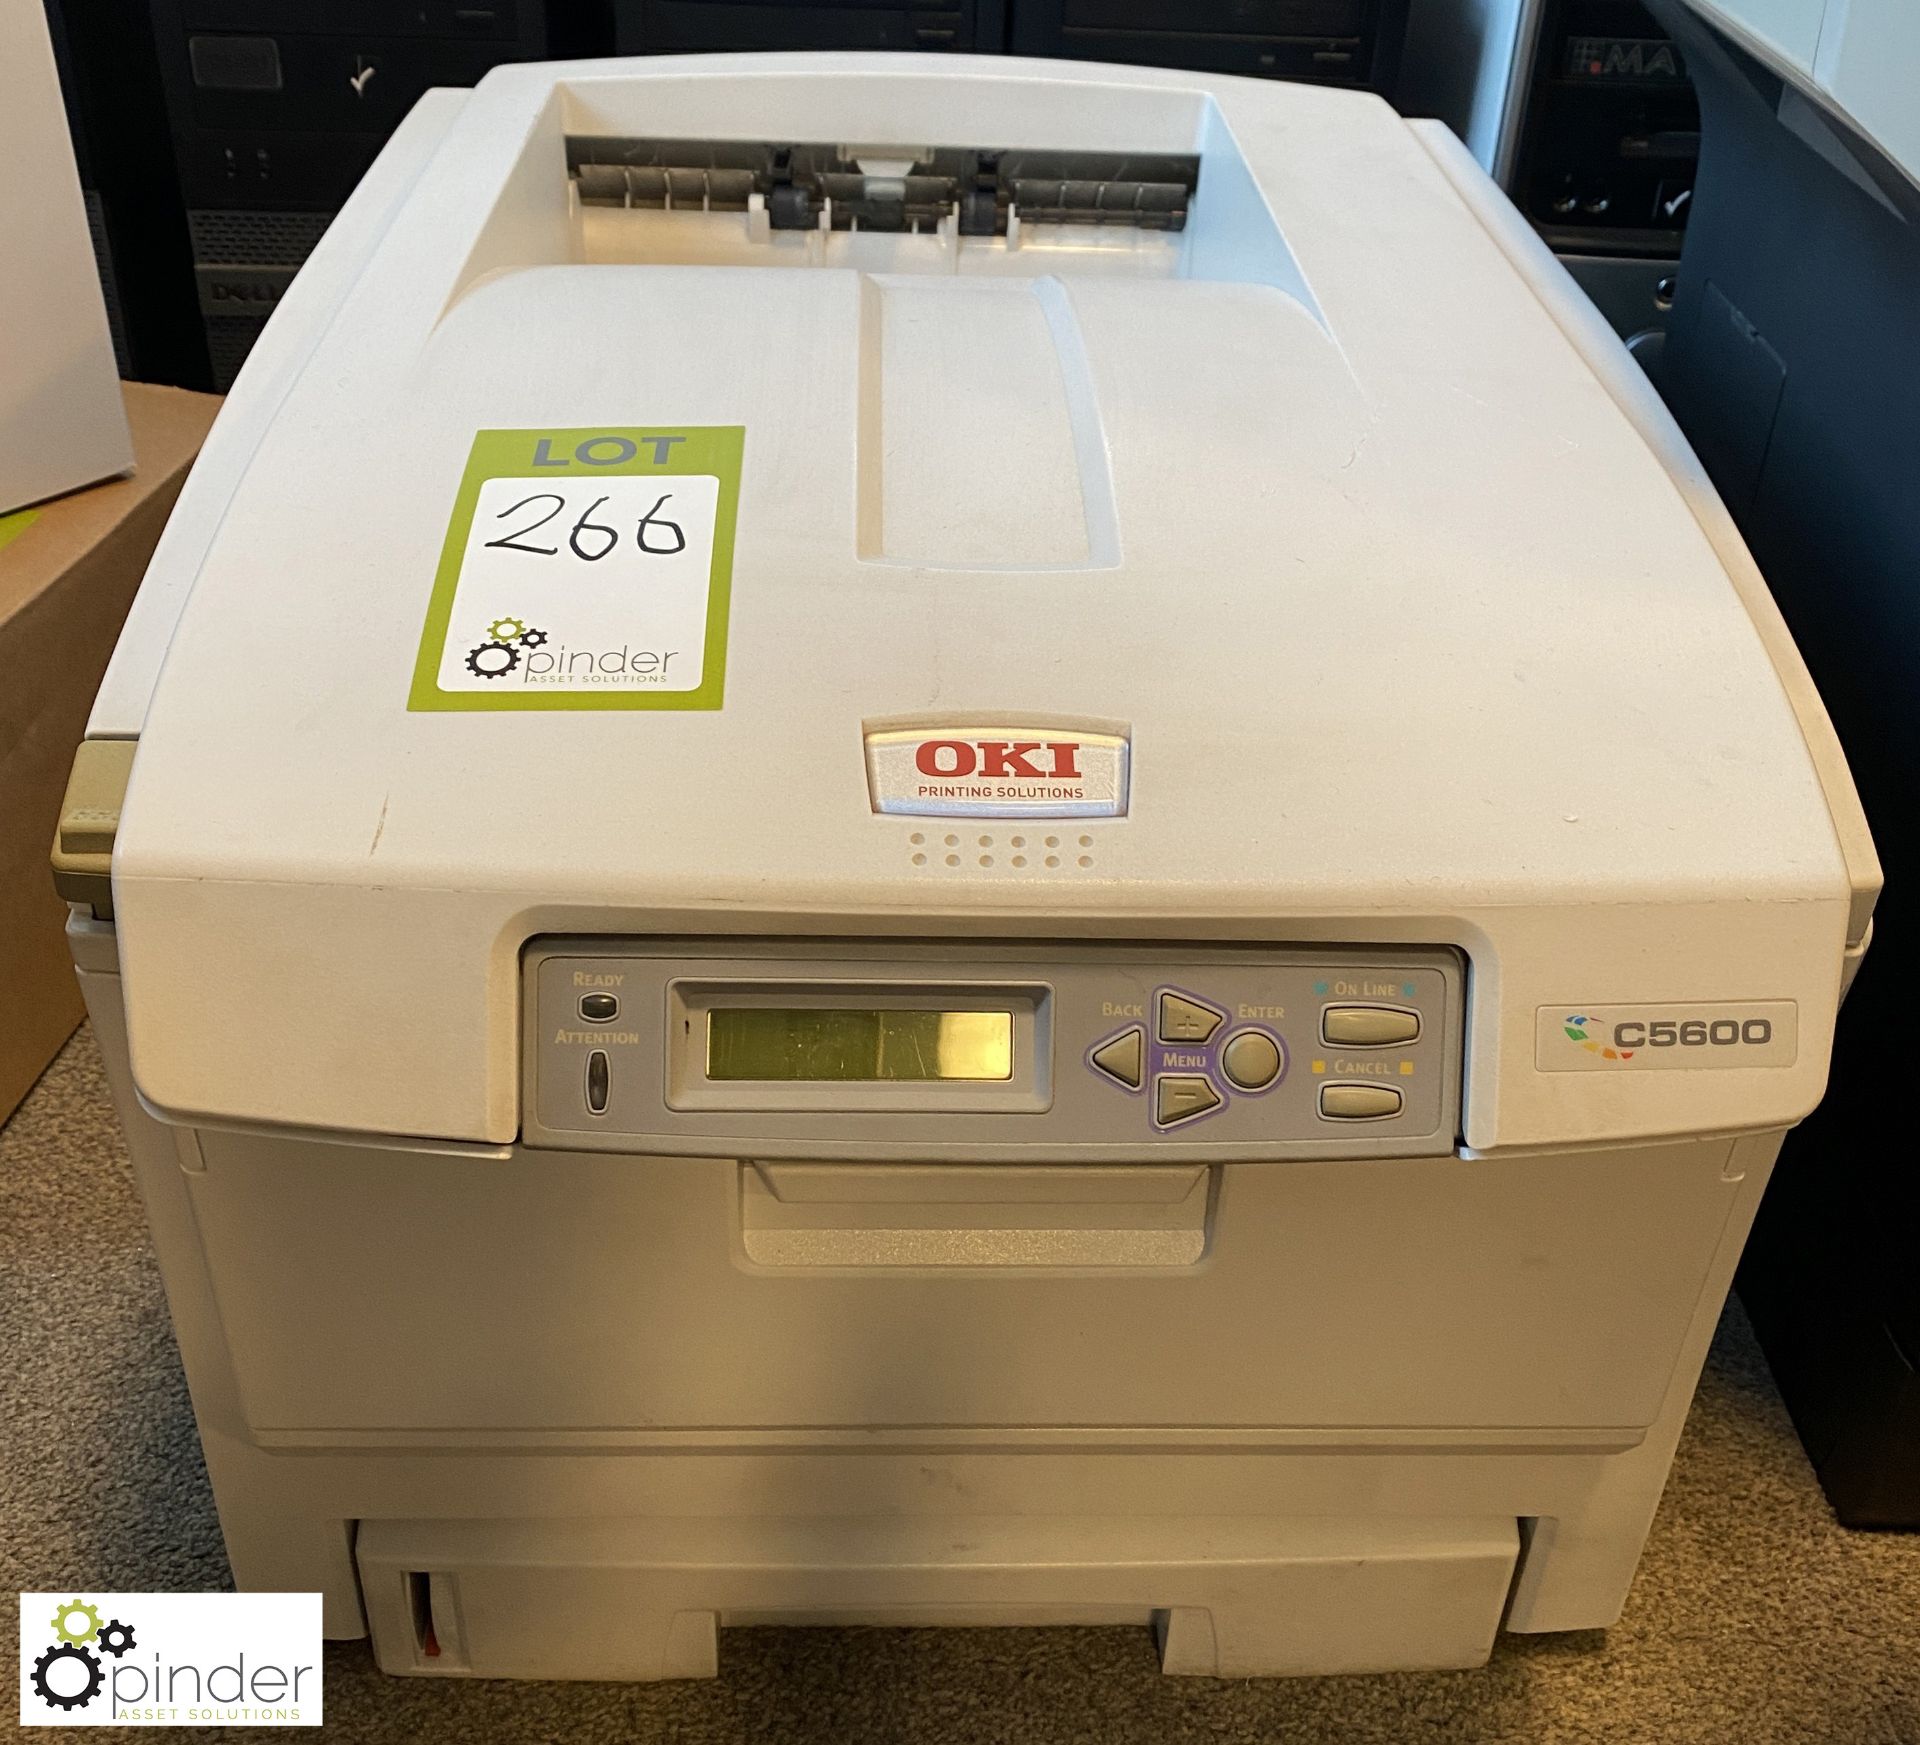 Oki C5600 Laser Printer, with quantity consumables including toner cartridges, drum cartridge, etc